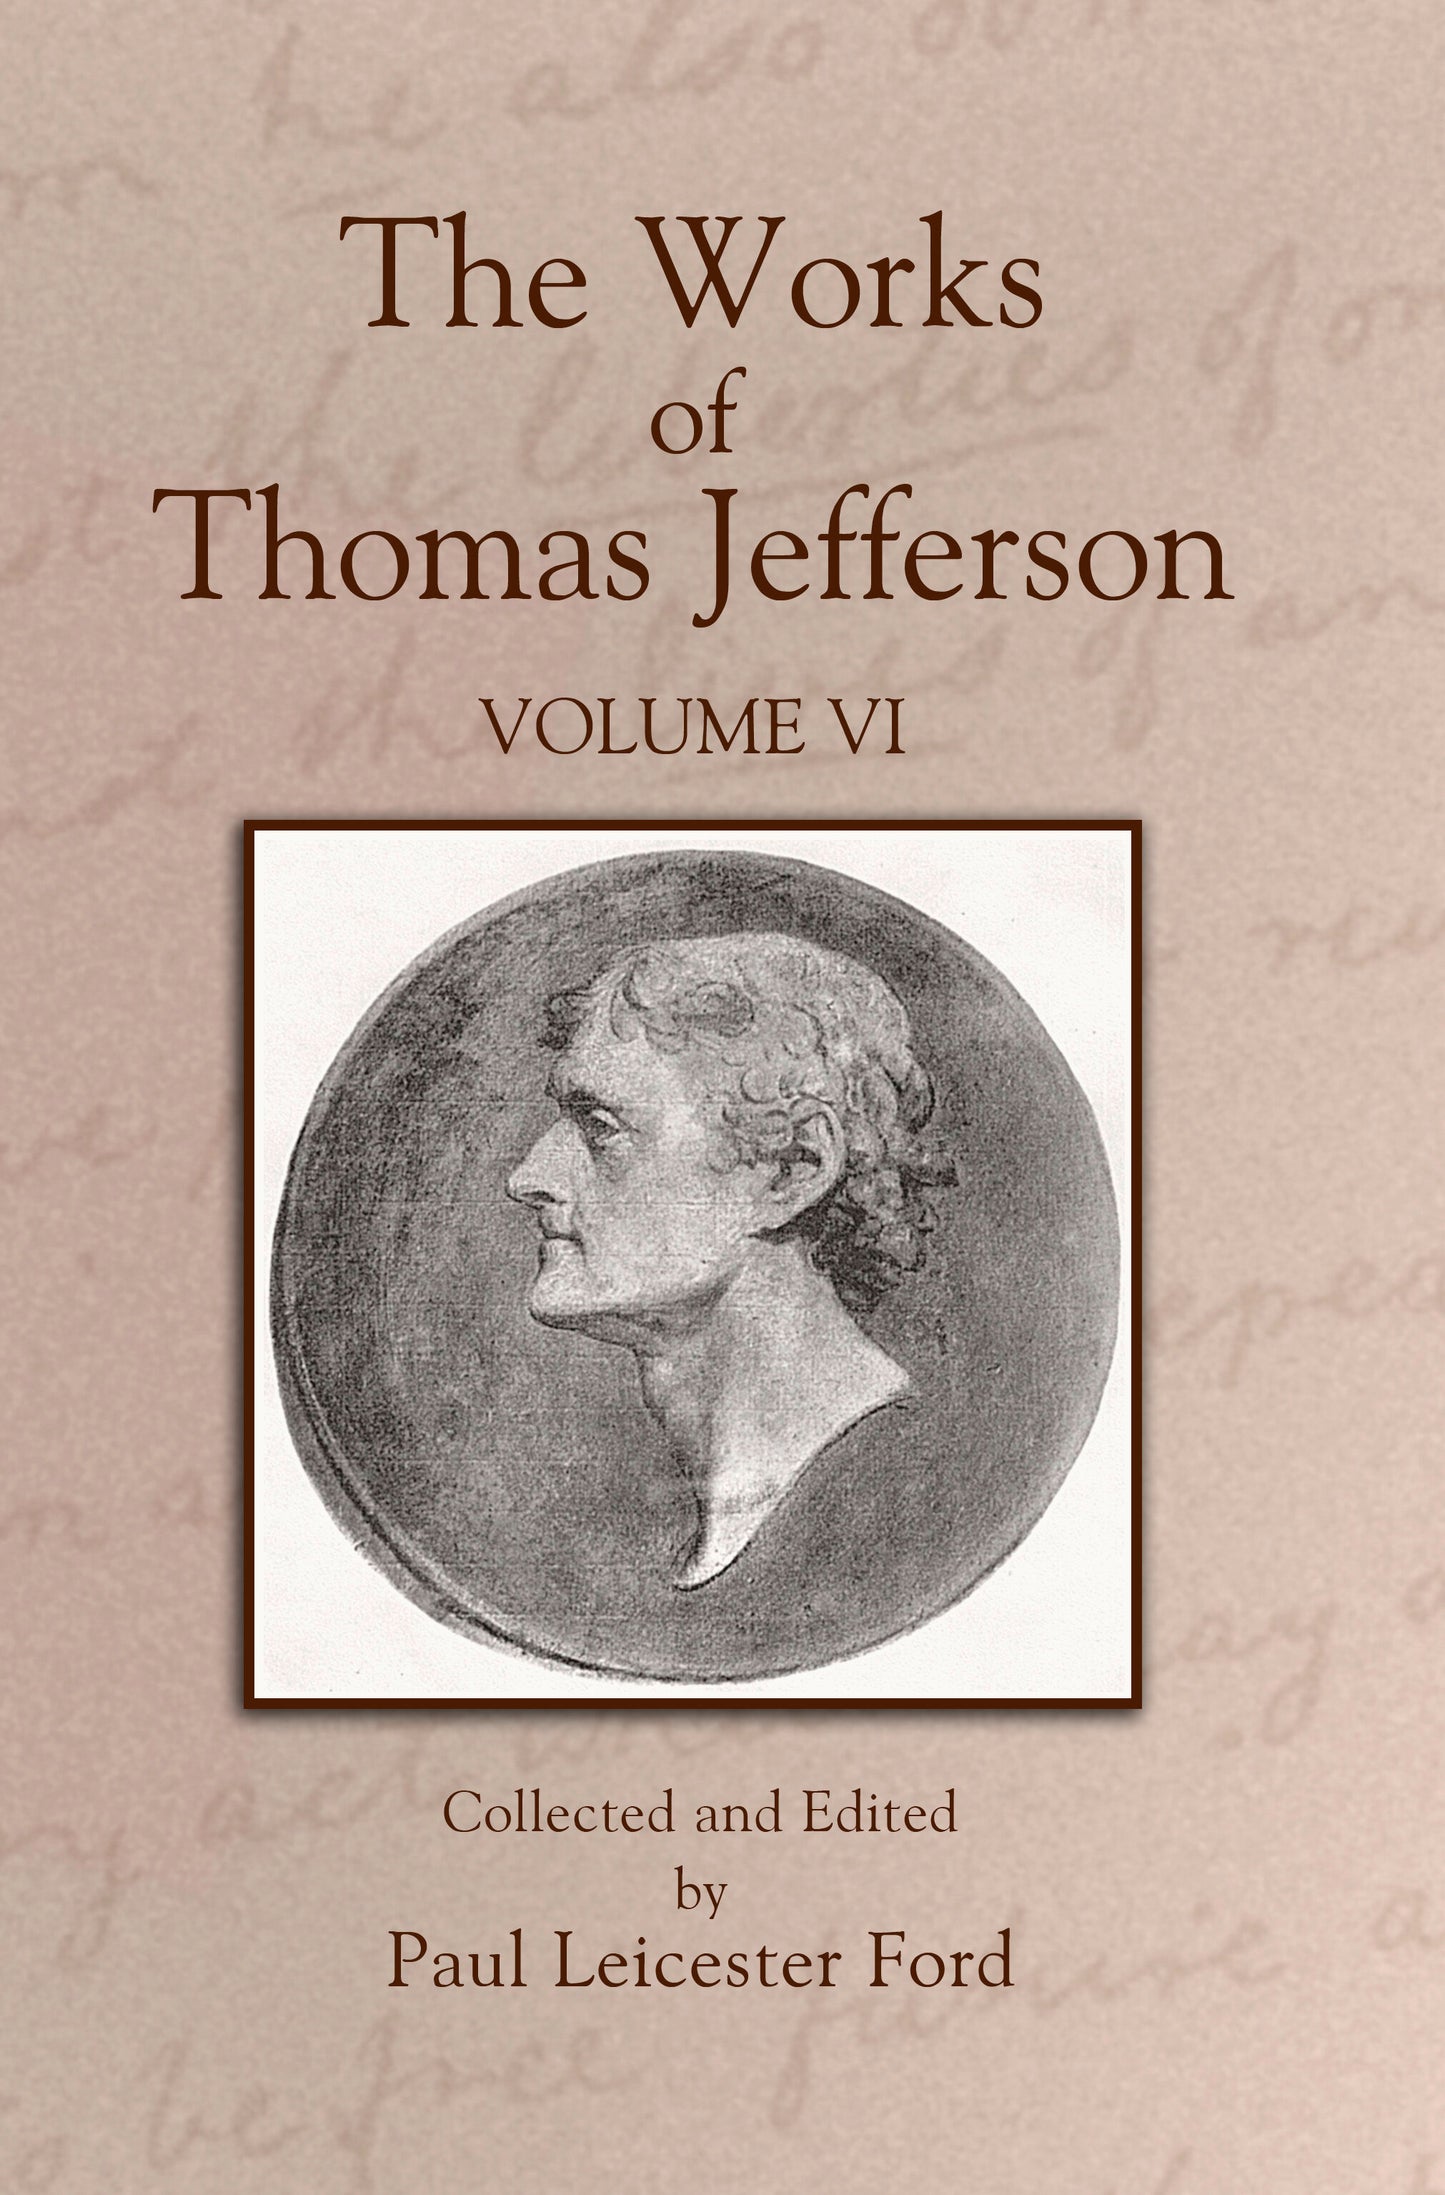 The Works of Thomas Jefferson: Volume VI